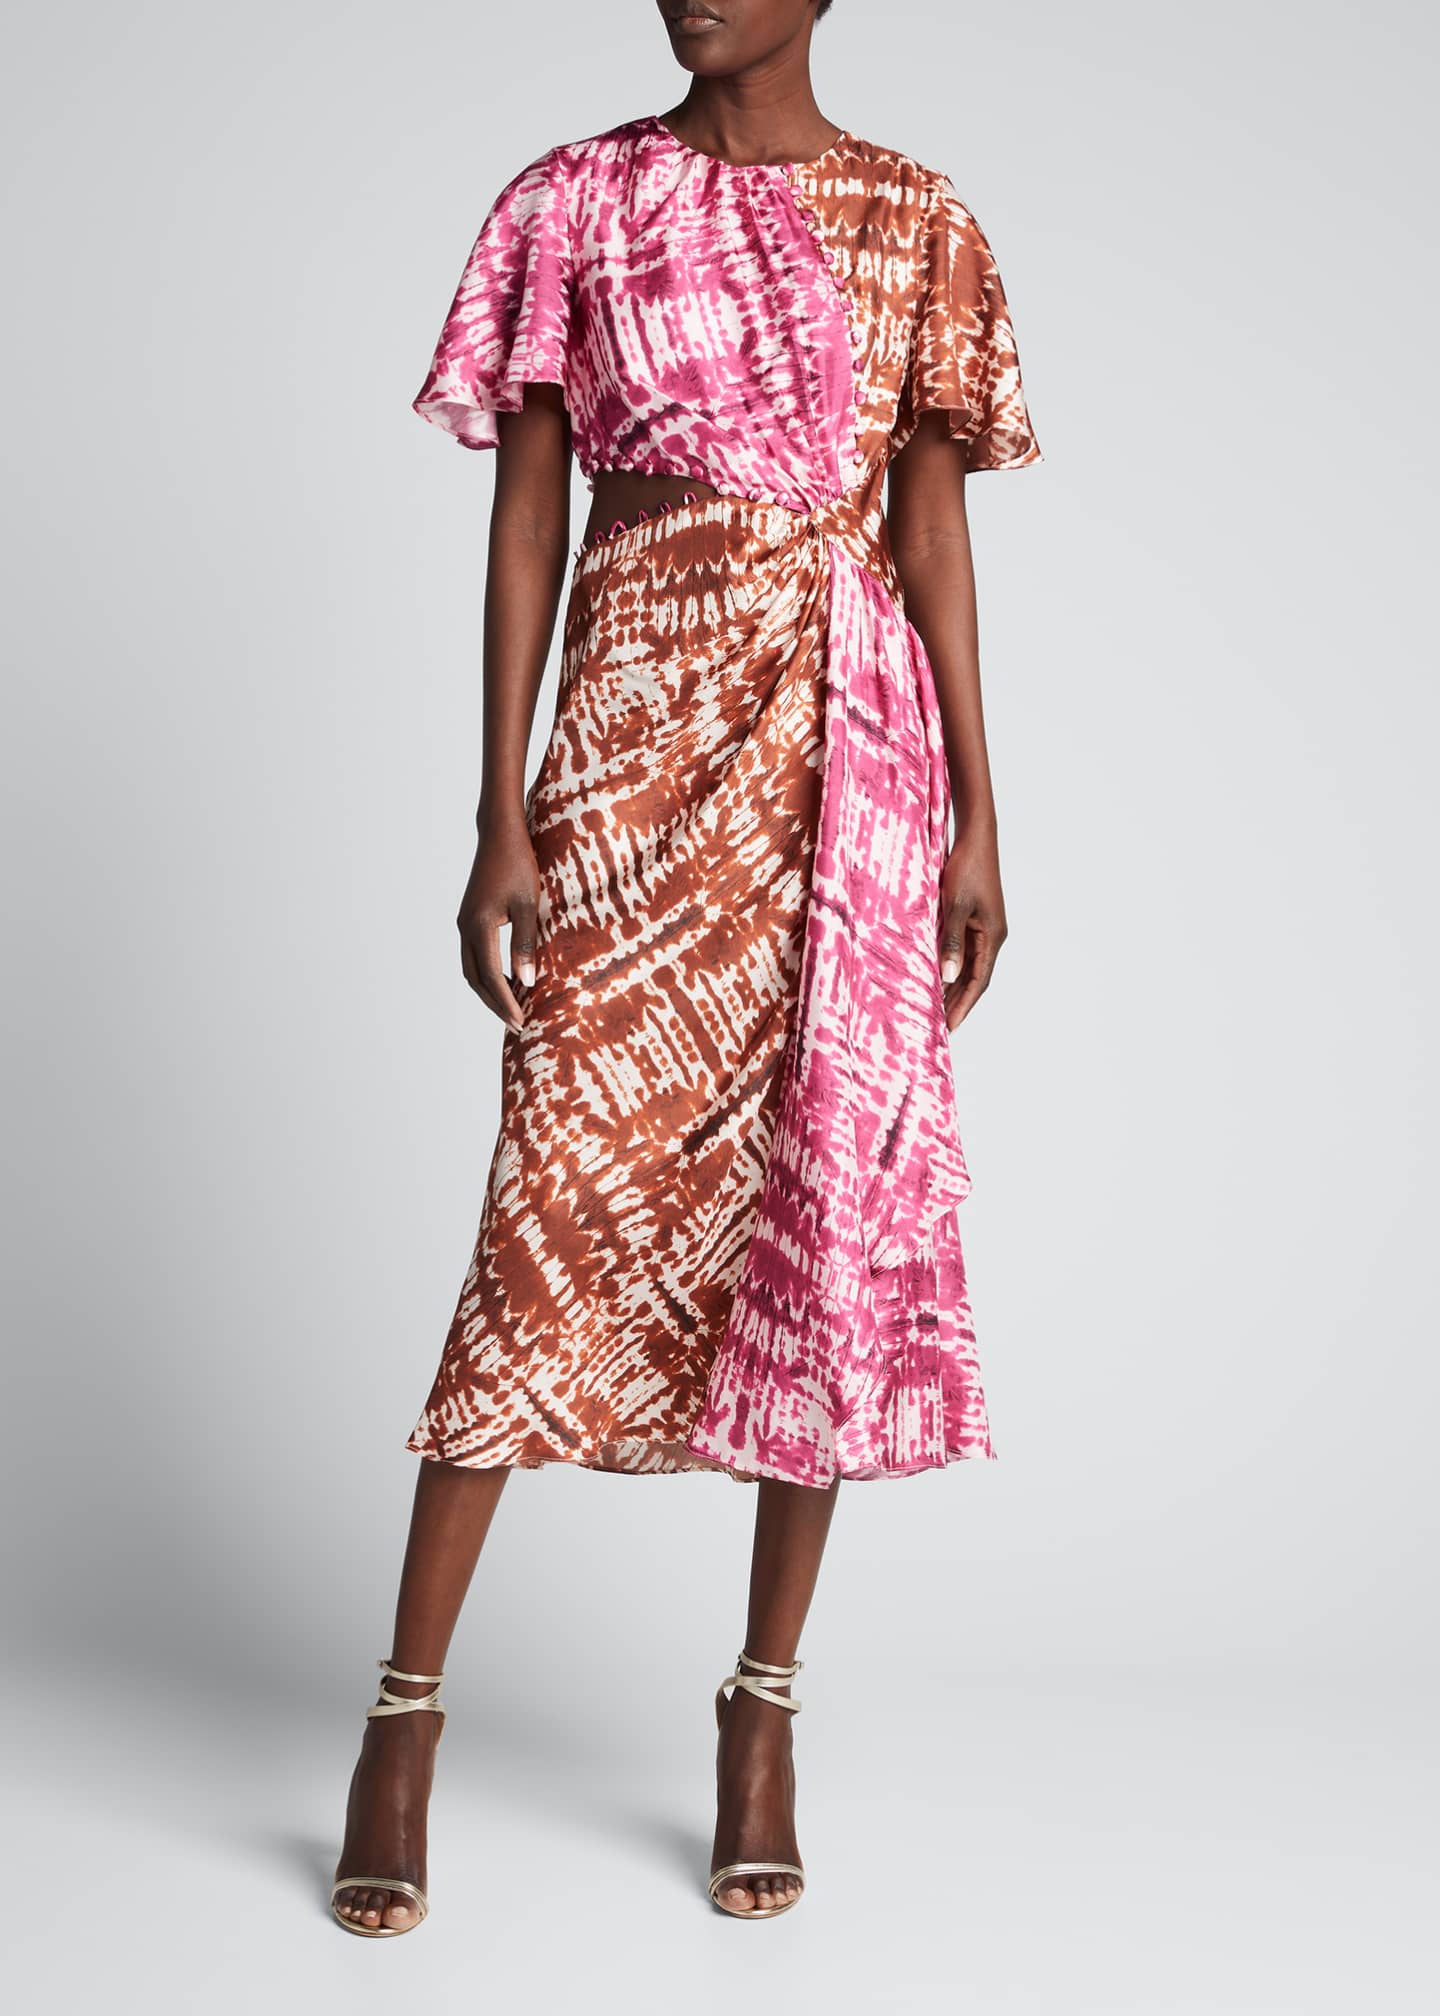 Prabal Gurung Colorblock Cutout Draped Silk Midi Dress - Bergdorf Goodman